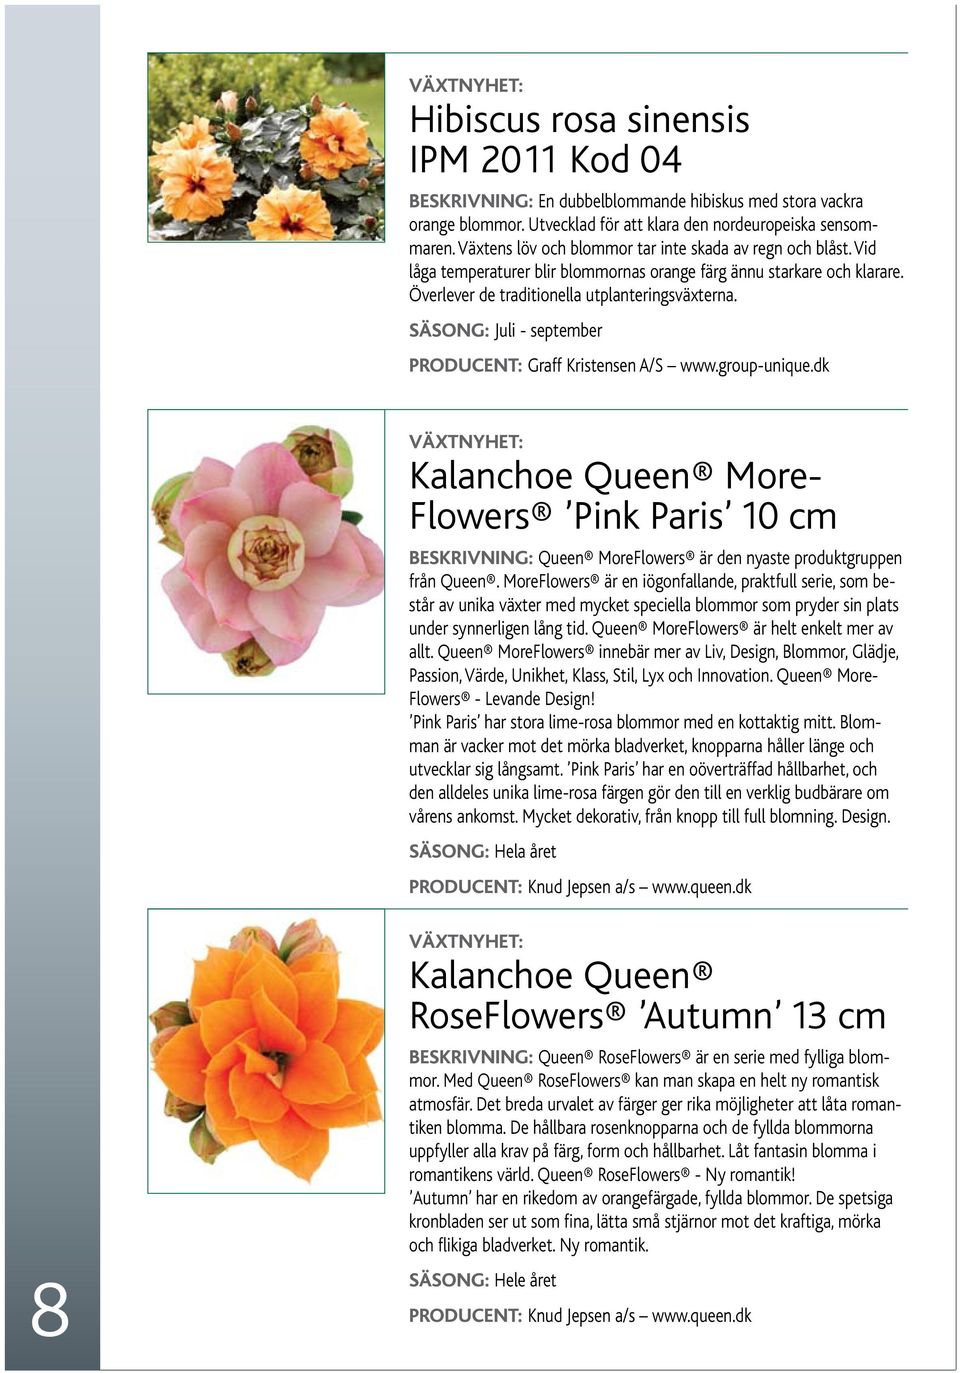 Säsong: Juli - september Producent: Graff Kristensen A/S www.group-unique.dk Kalanchoe Queen More- Flowers Pink Paris 10 cm Beskrivning: Queen MoreFlowers är den nyaste produktgruppen från Queen.